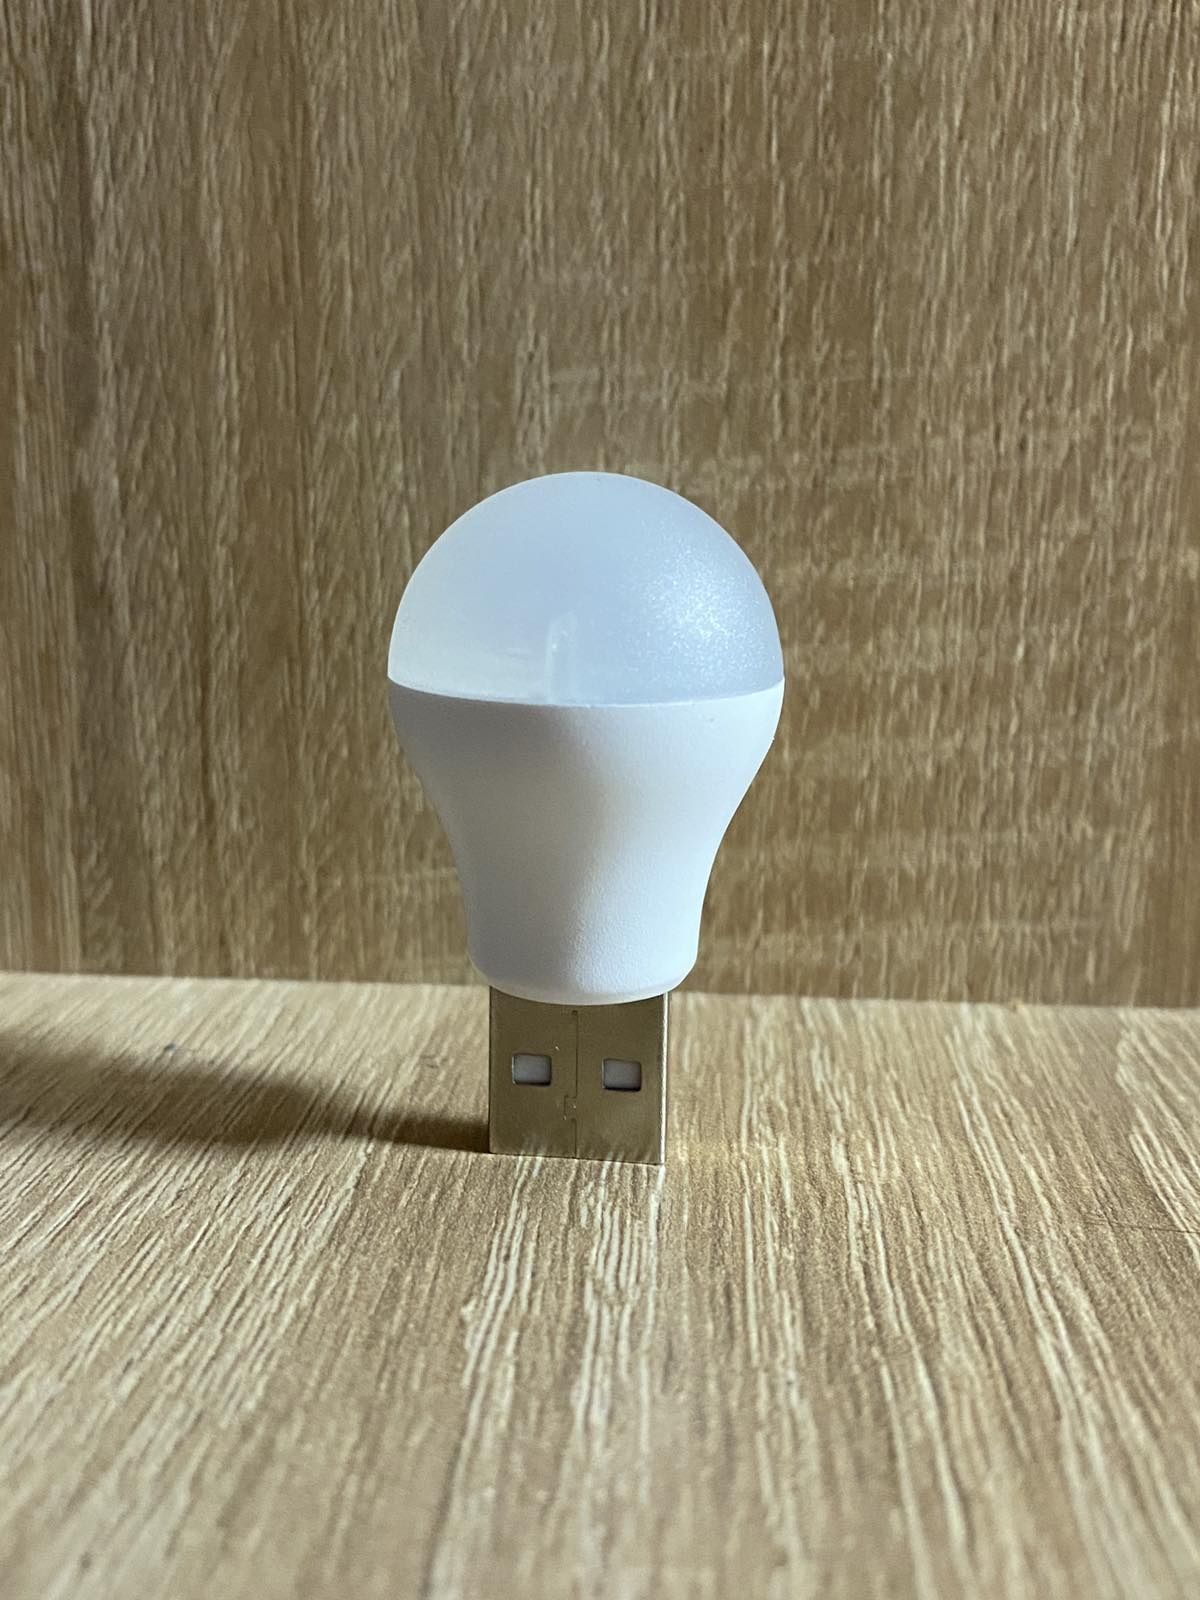 XIAOMI USB LED-лампа світильник нічник